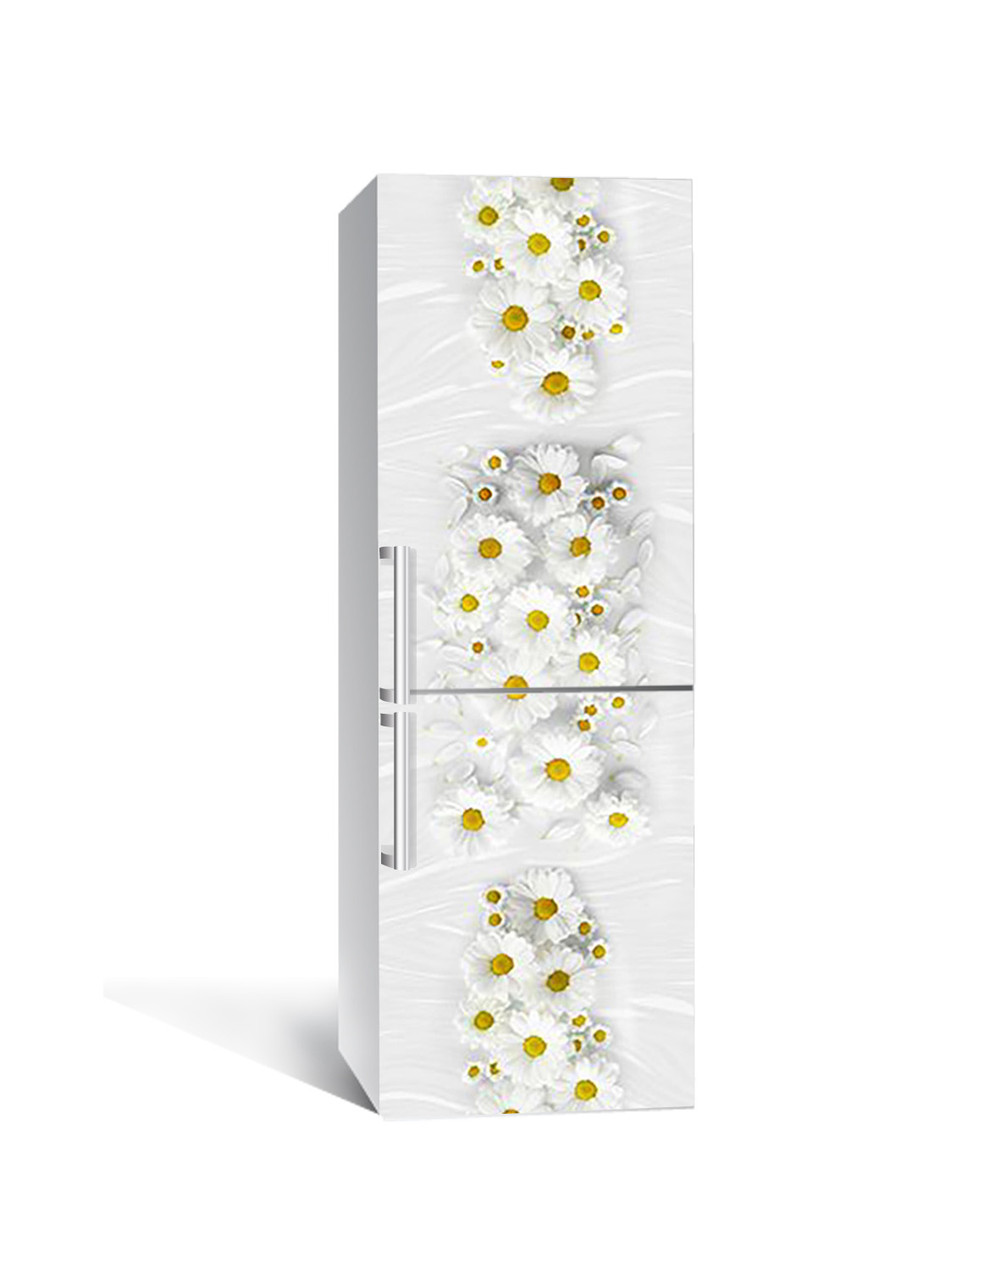 

Виниловая наклейка на холодильник 3Д Ромашковое молоко (пленка ПВХ с ламинацией) 65*200см цветы Белый